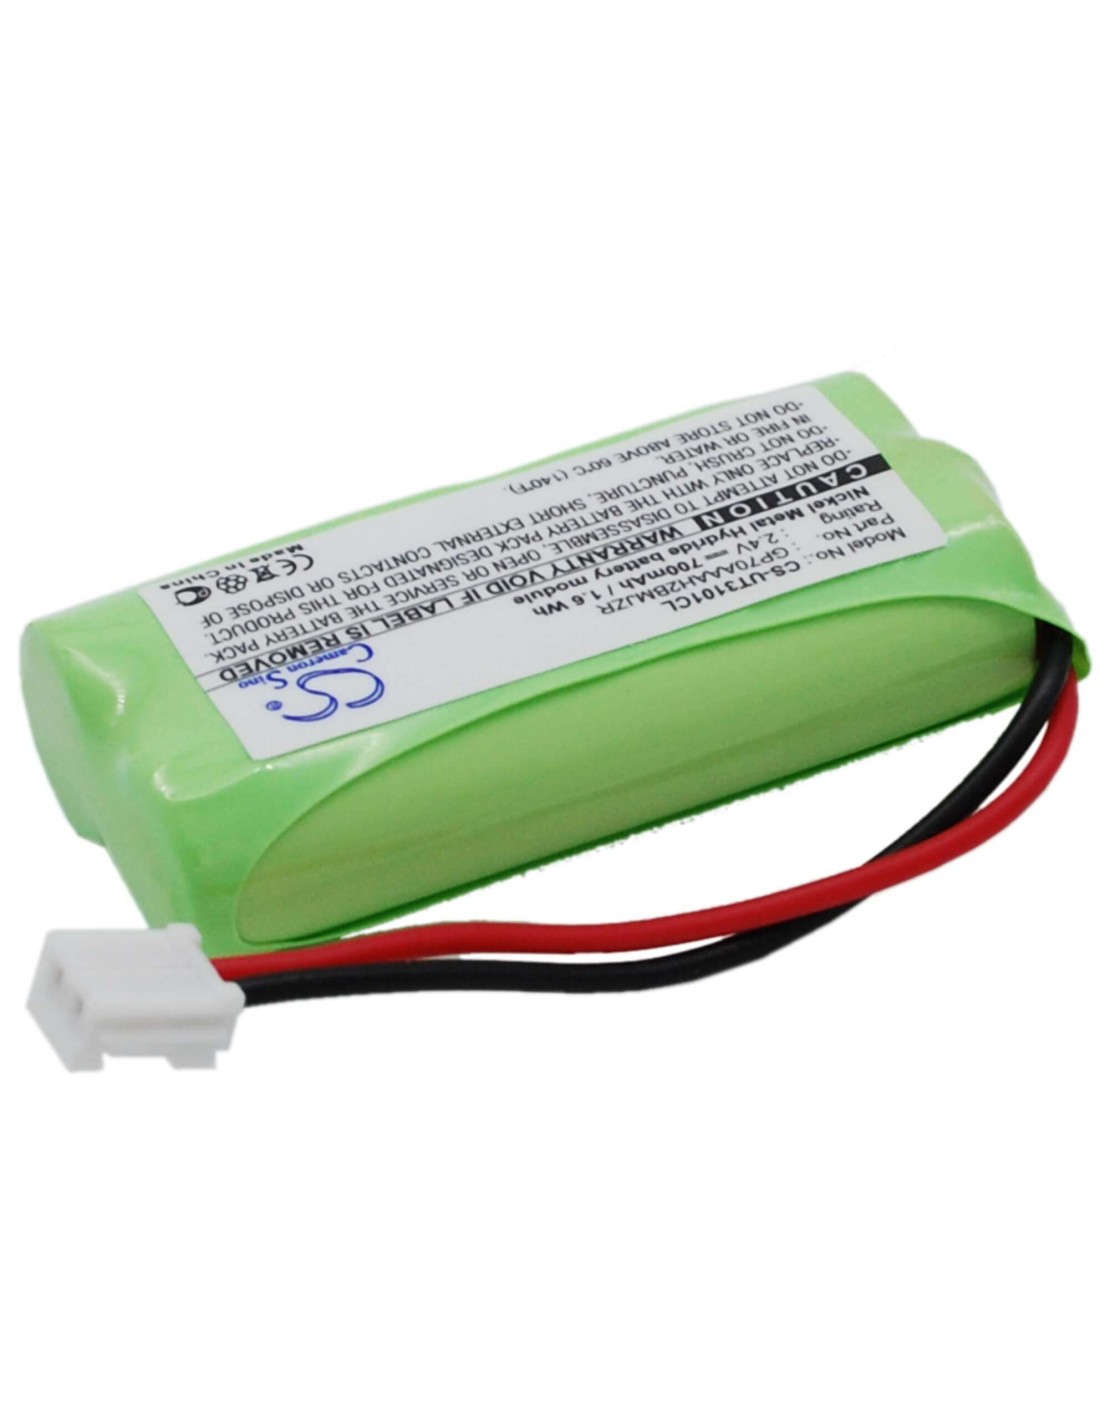 Battery for Telstra, V850a 2.4V, 700mAh - 1.68Wh